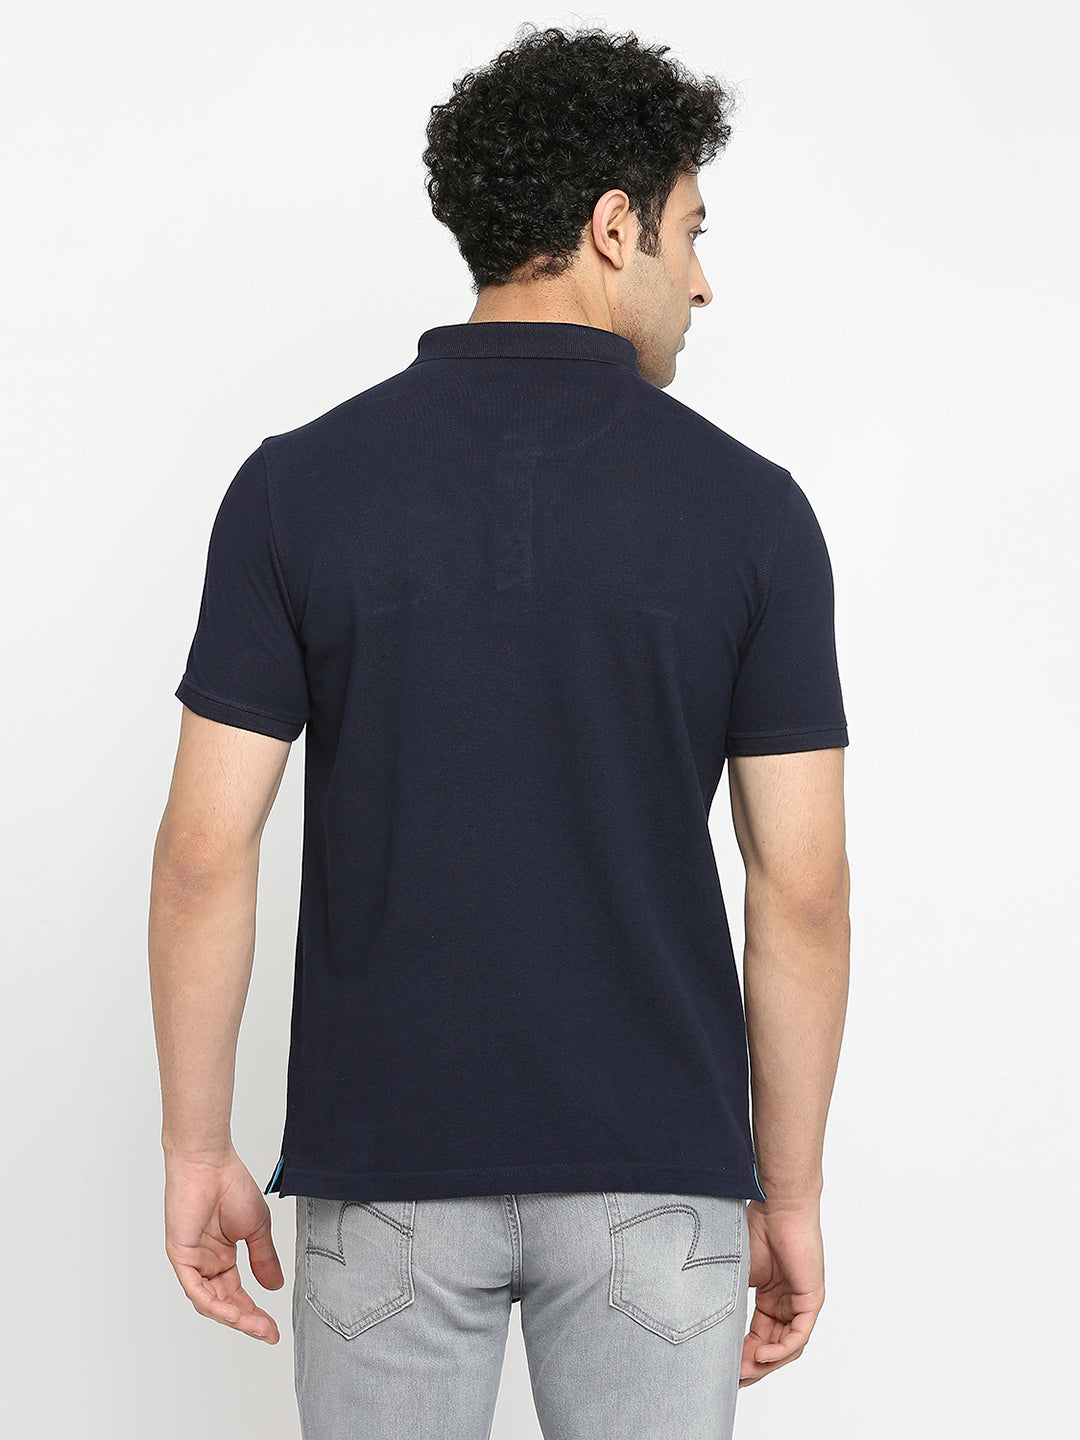 Men Premium Cotton Navy Blue Polo T-shirt- UnderJeans by Spykar